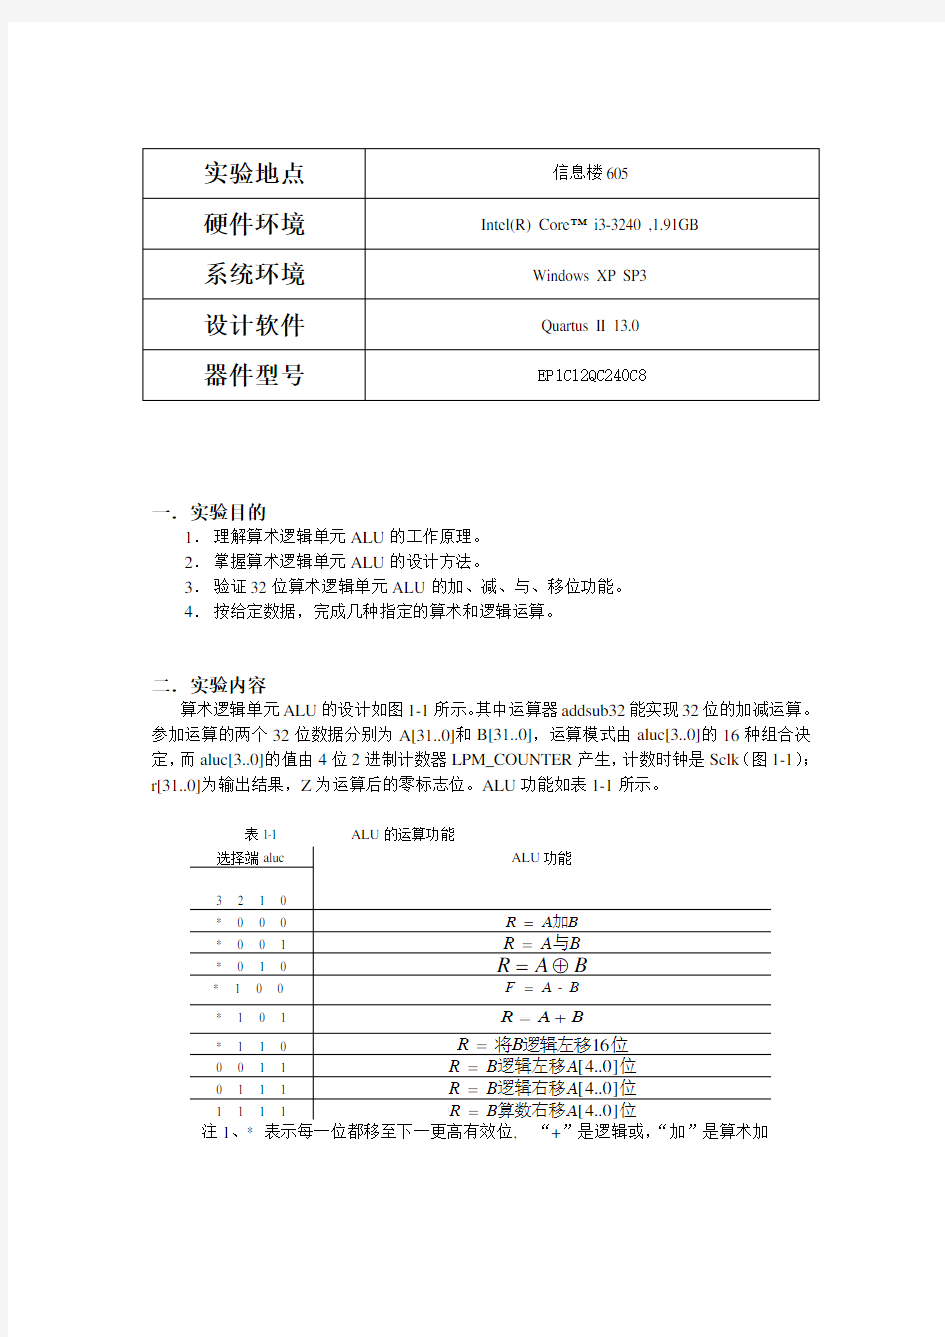 湘潭大学计算机原理实验一算术逻辑单元ALU实验报告